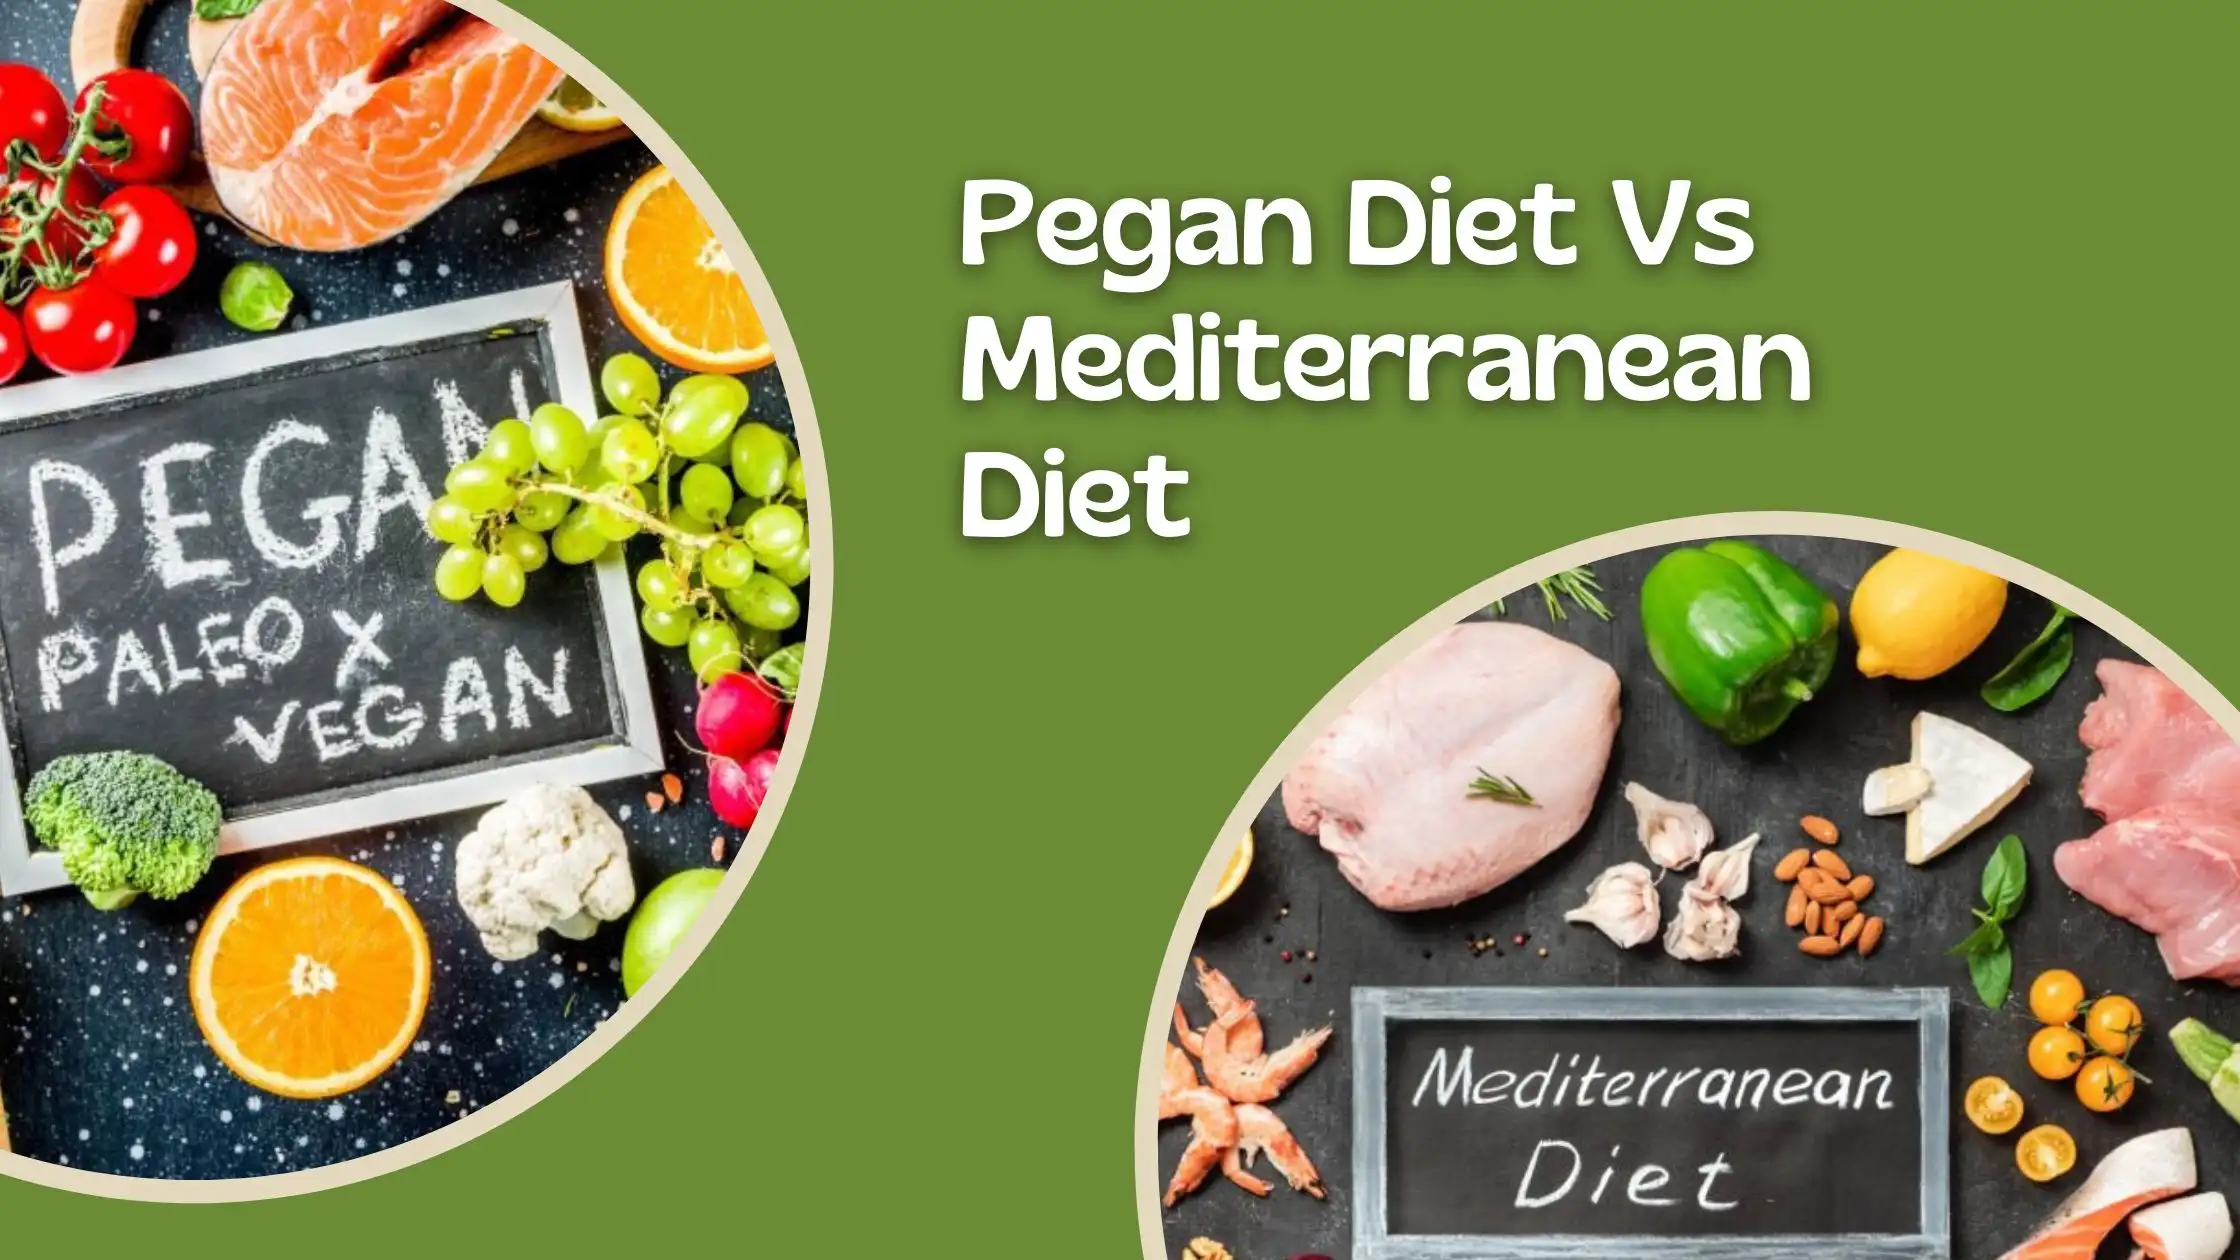 Pegan Diet and Mediterranean Diet